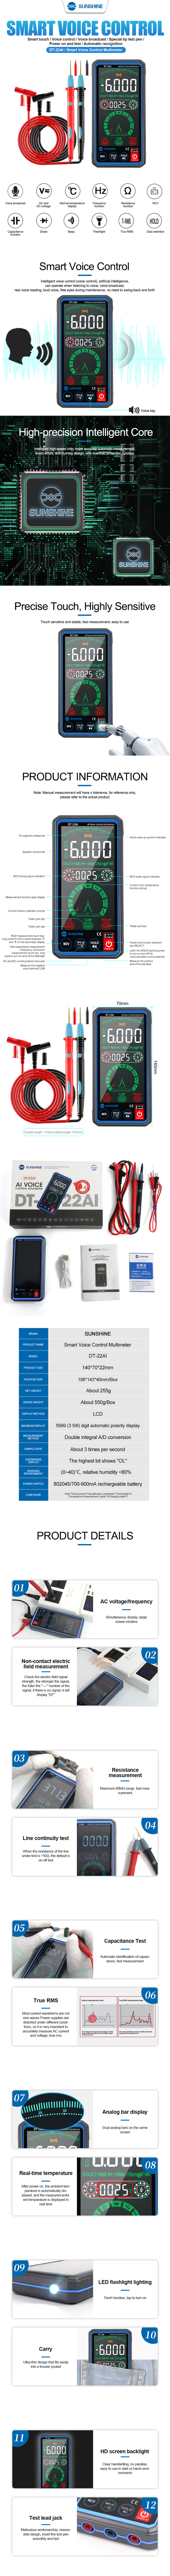 SUNSHINE DT-22AI Intelligent Voice Control Multimeter (English Version) SUNSHINE DT-22AI Intelligent Voice Control Multimeter (English Version)